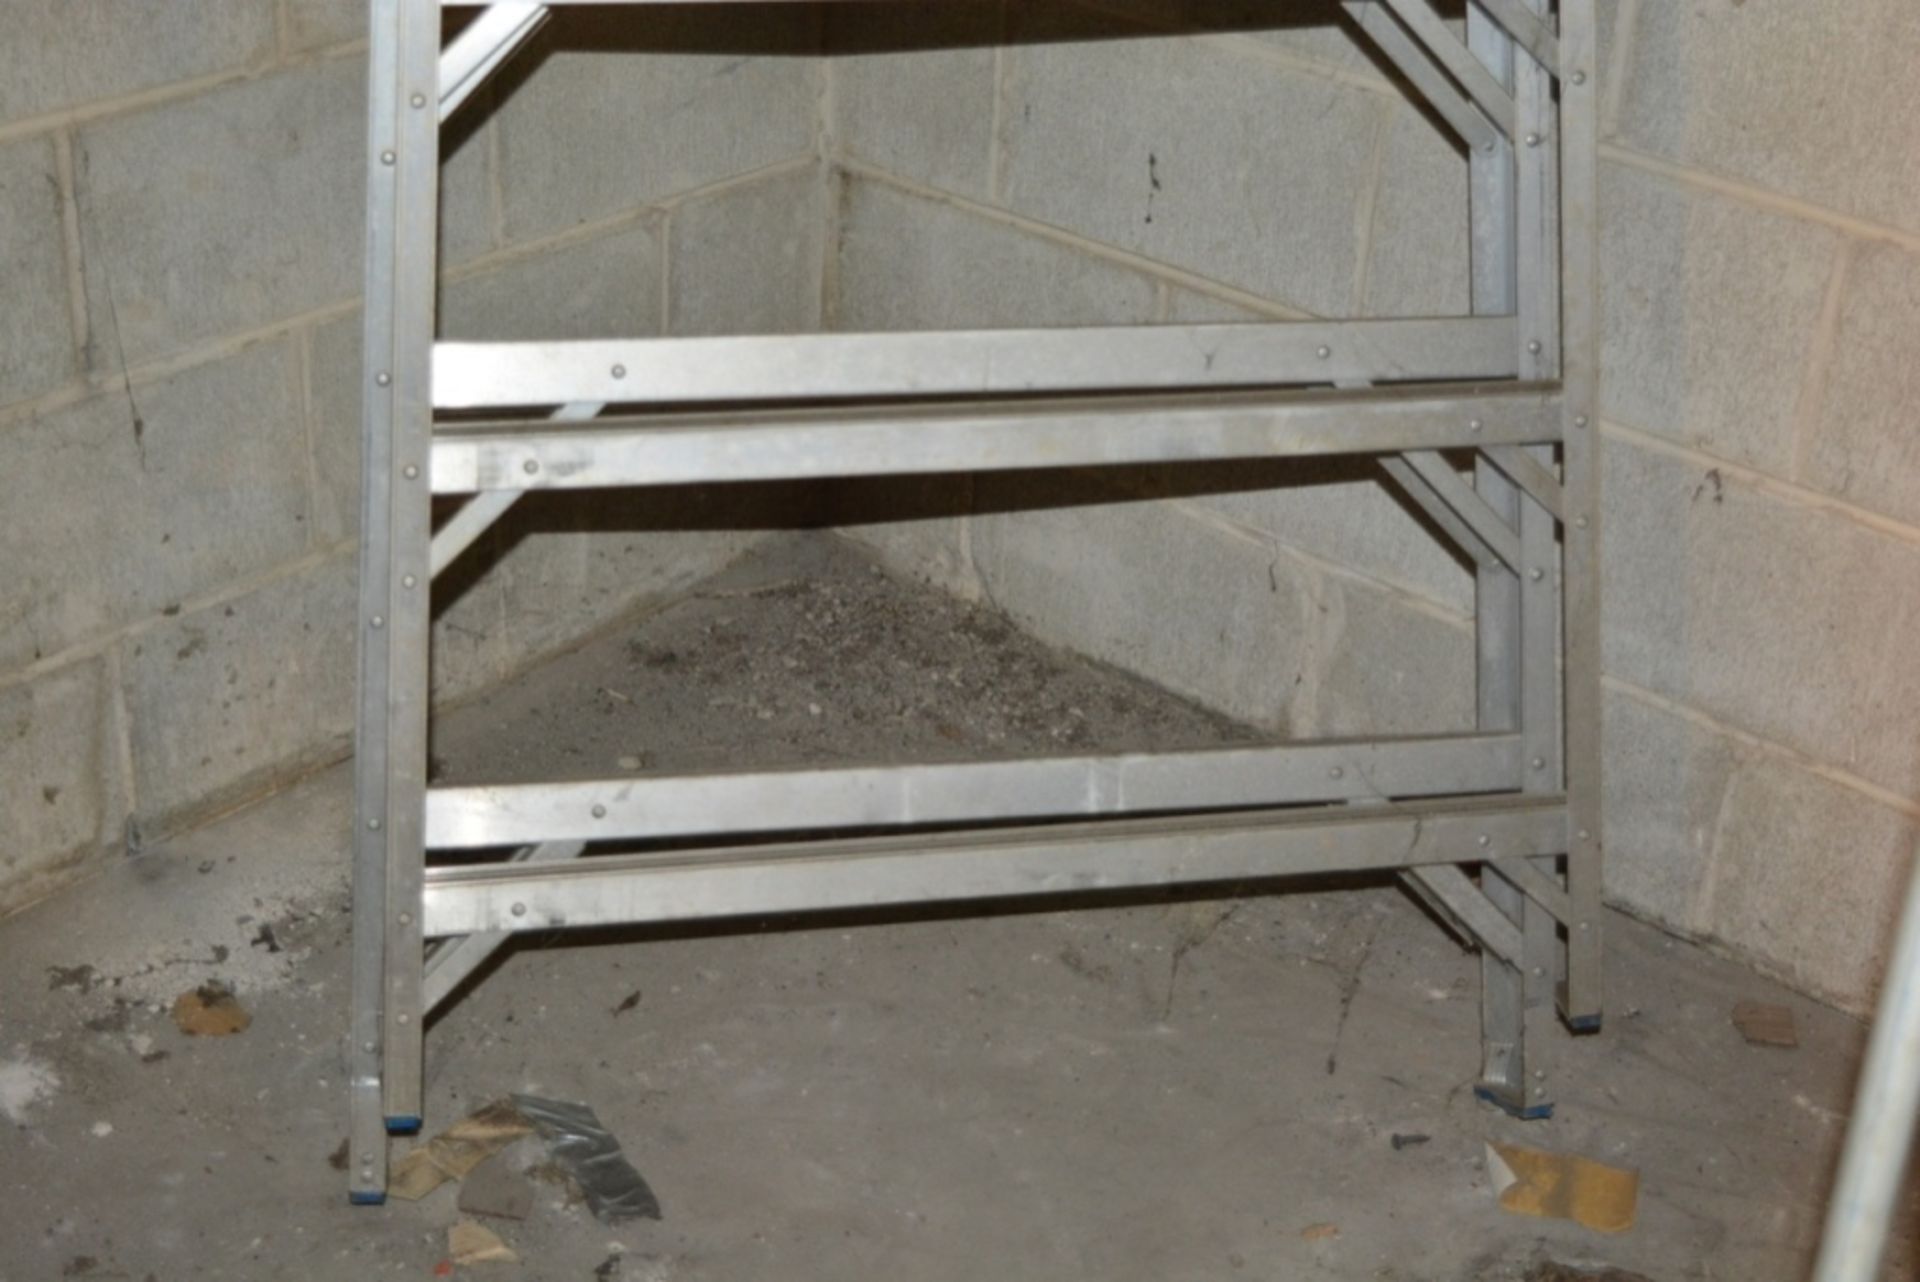 Werner 1610 12' Aluminum Step Ladder - Image 2 of 4